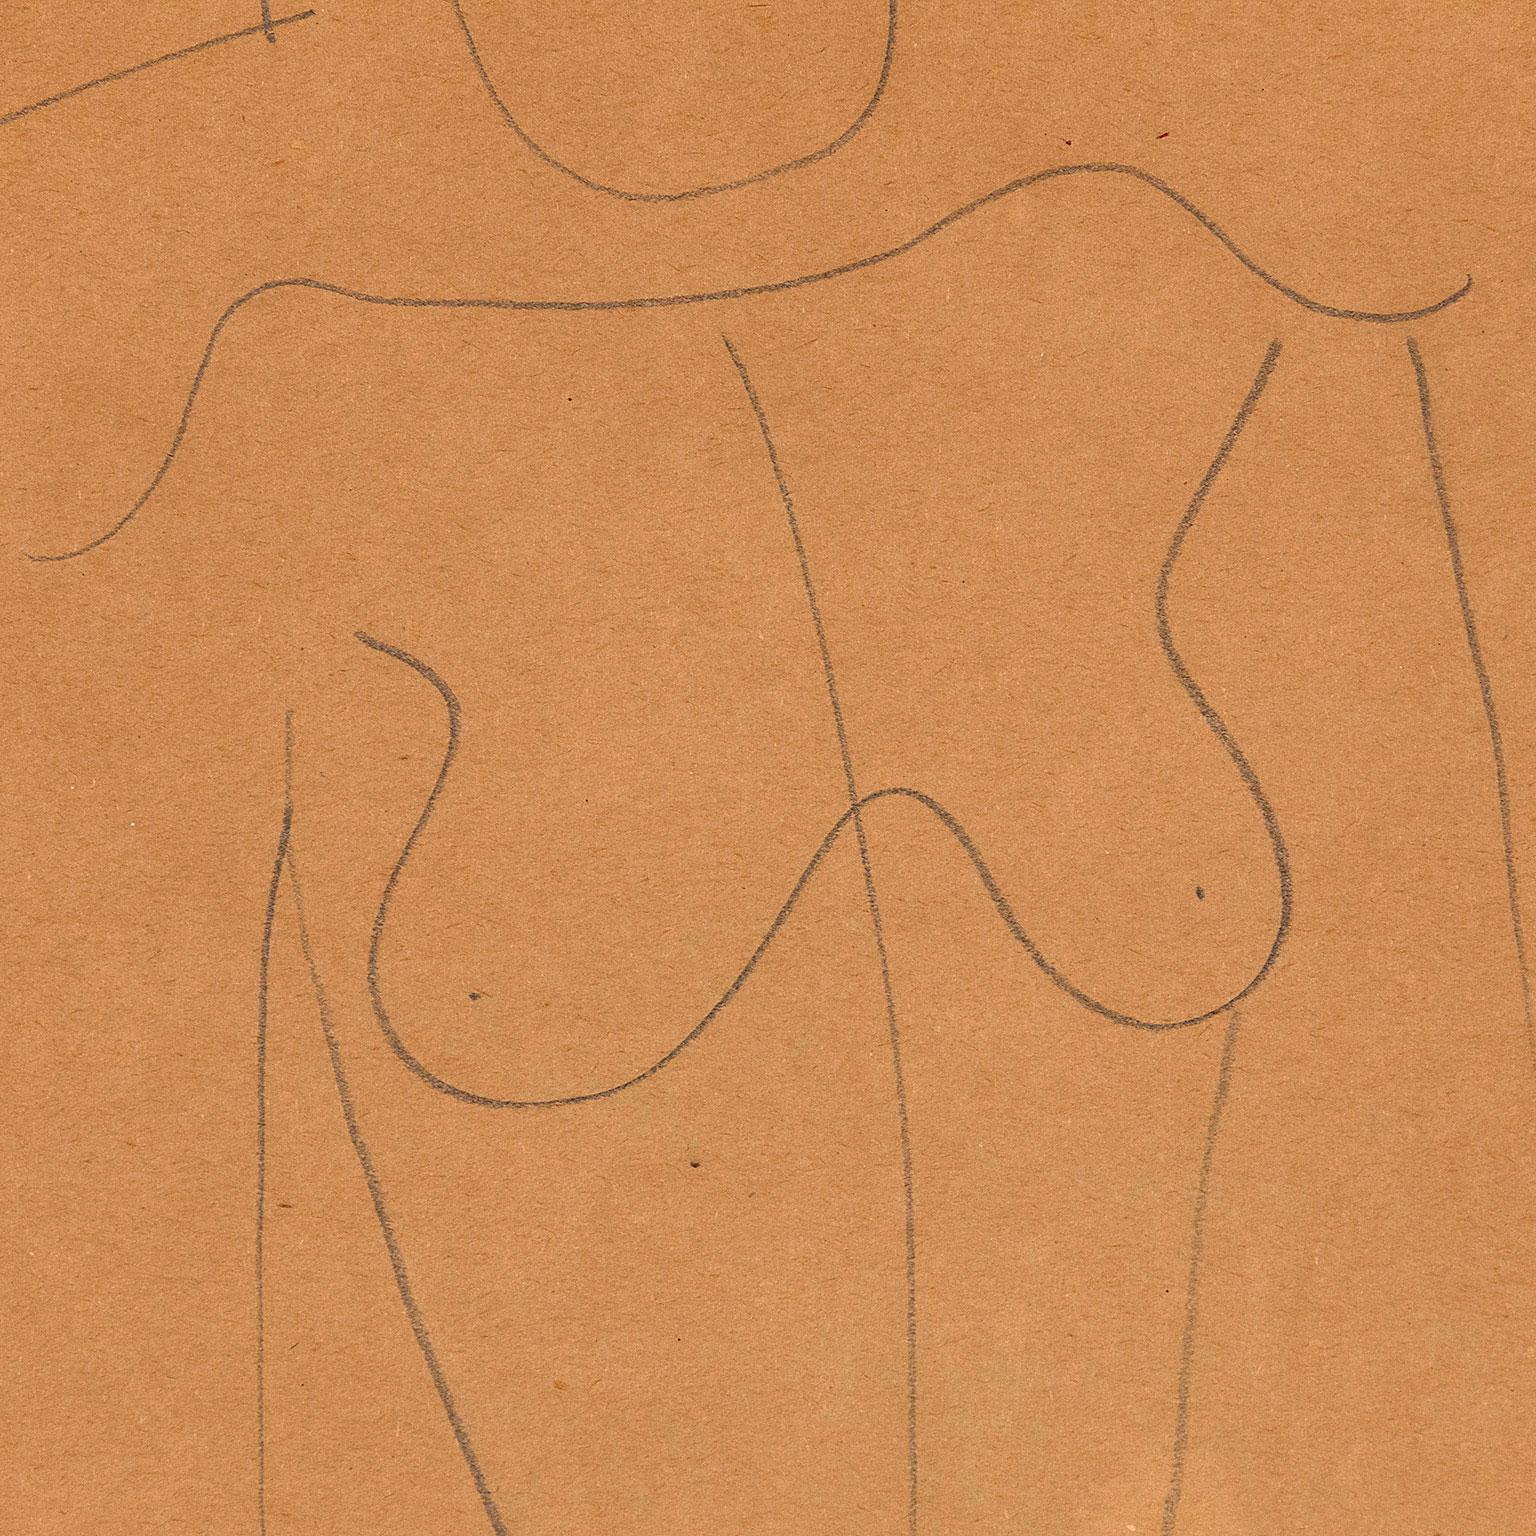 Louise Nevelson (1899-1988) gilt als eine der bedeutendsten Künstlerinnen des 20. Sie ist bekannt für ihre monochromen skulpturalen Holzkonstruktionen.

Es ist jedoch wichtig zu betonen, dass Nevelson fast 30 Jahre lang schuftete und